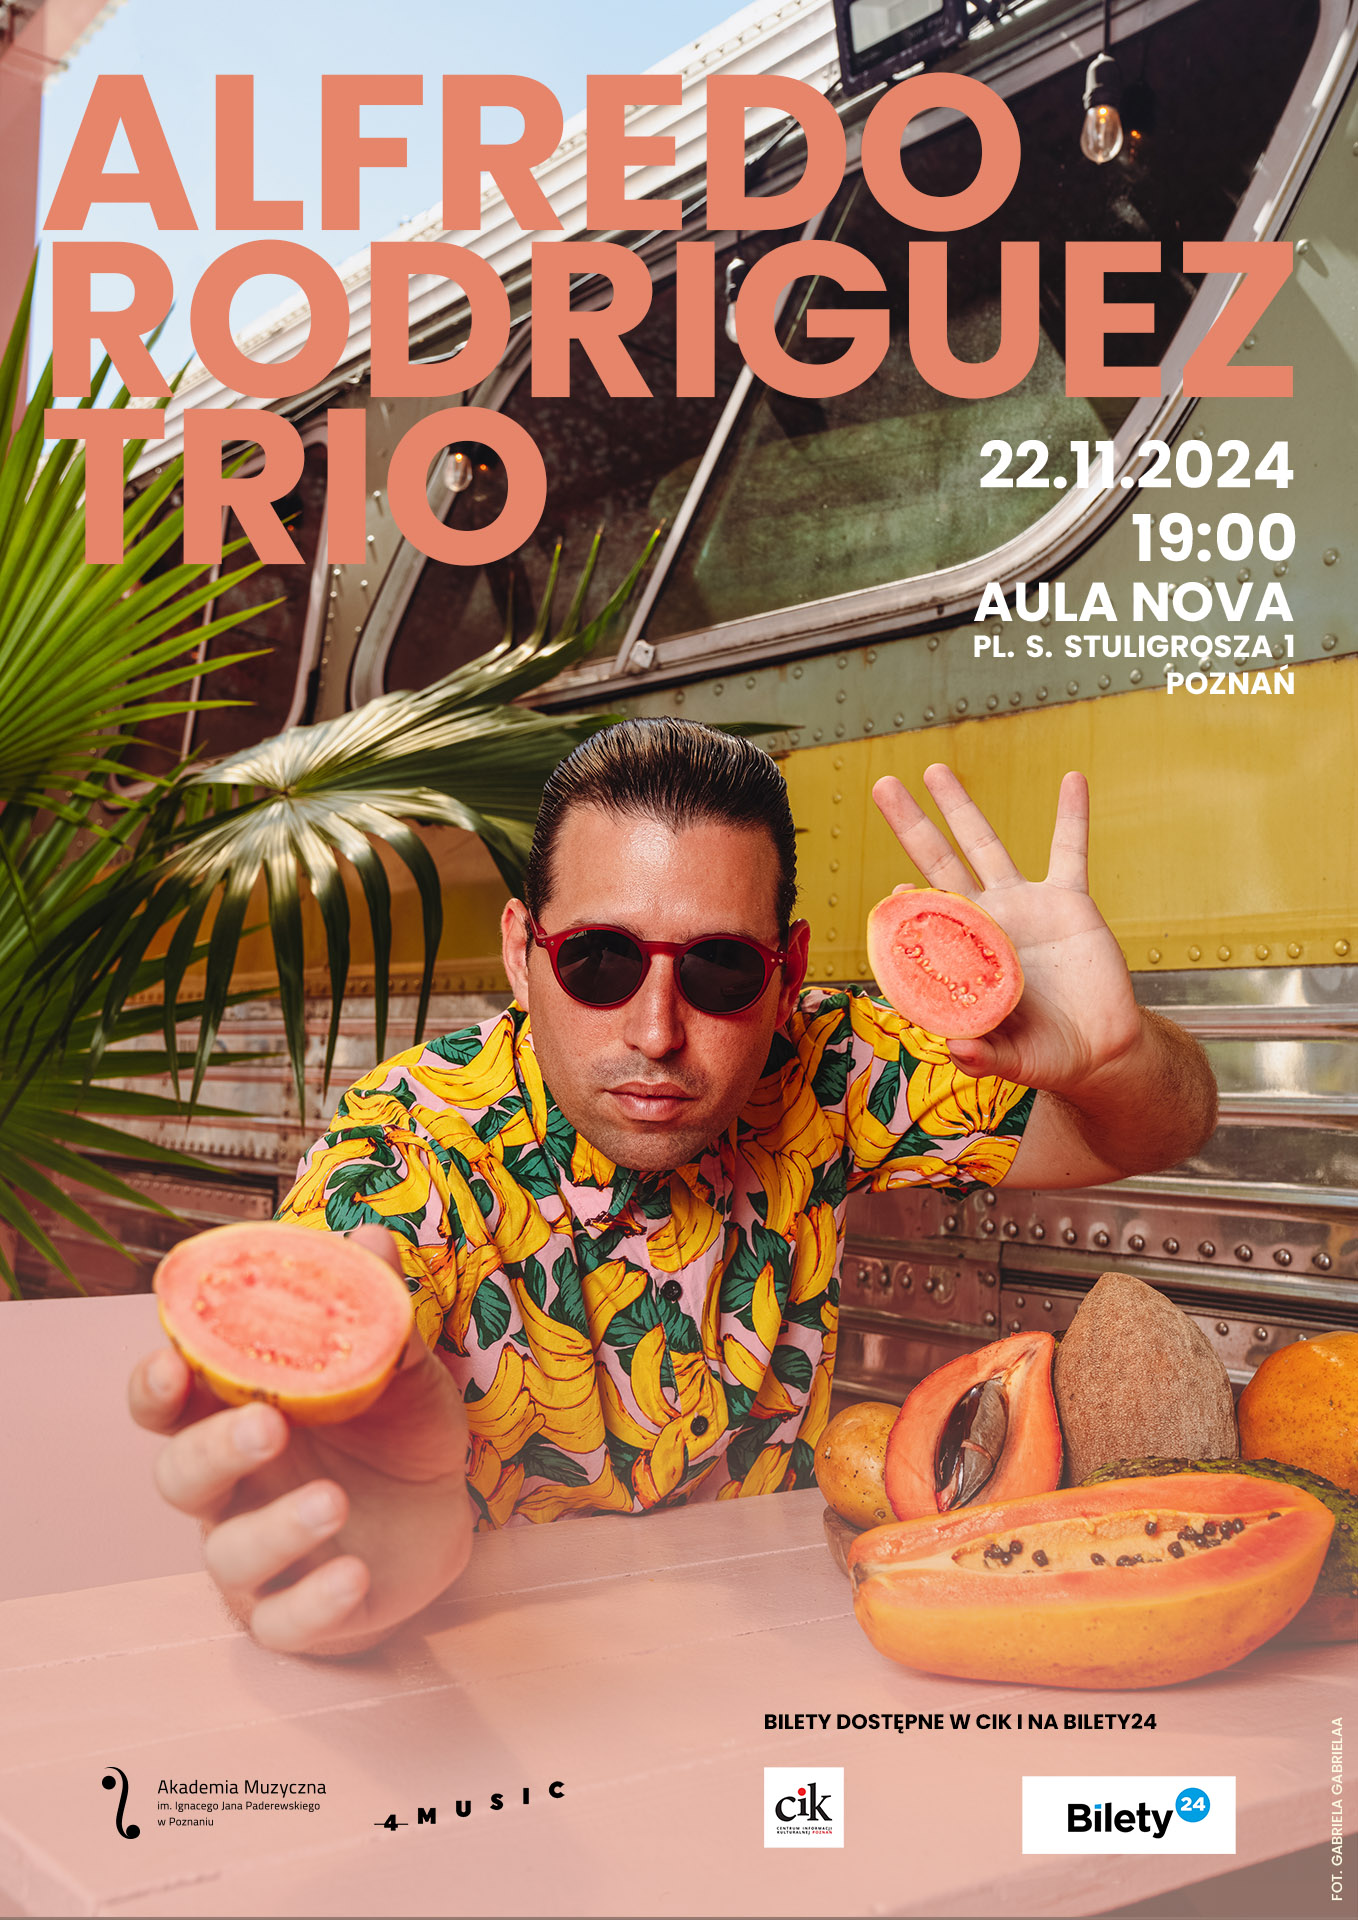 Alfredo Rodriguez_plakat zawiera informacje na temat koncertu w dniu 22 listopada 2024. Na zdjęciu mężczyzna w kolorowej koszuli i okularach przeciwsłonecznych, trzyma w ręku owoc.